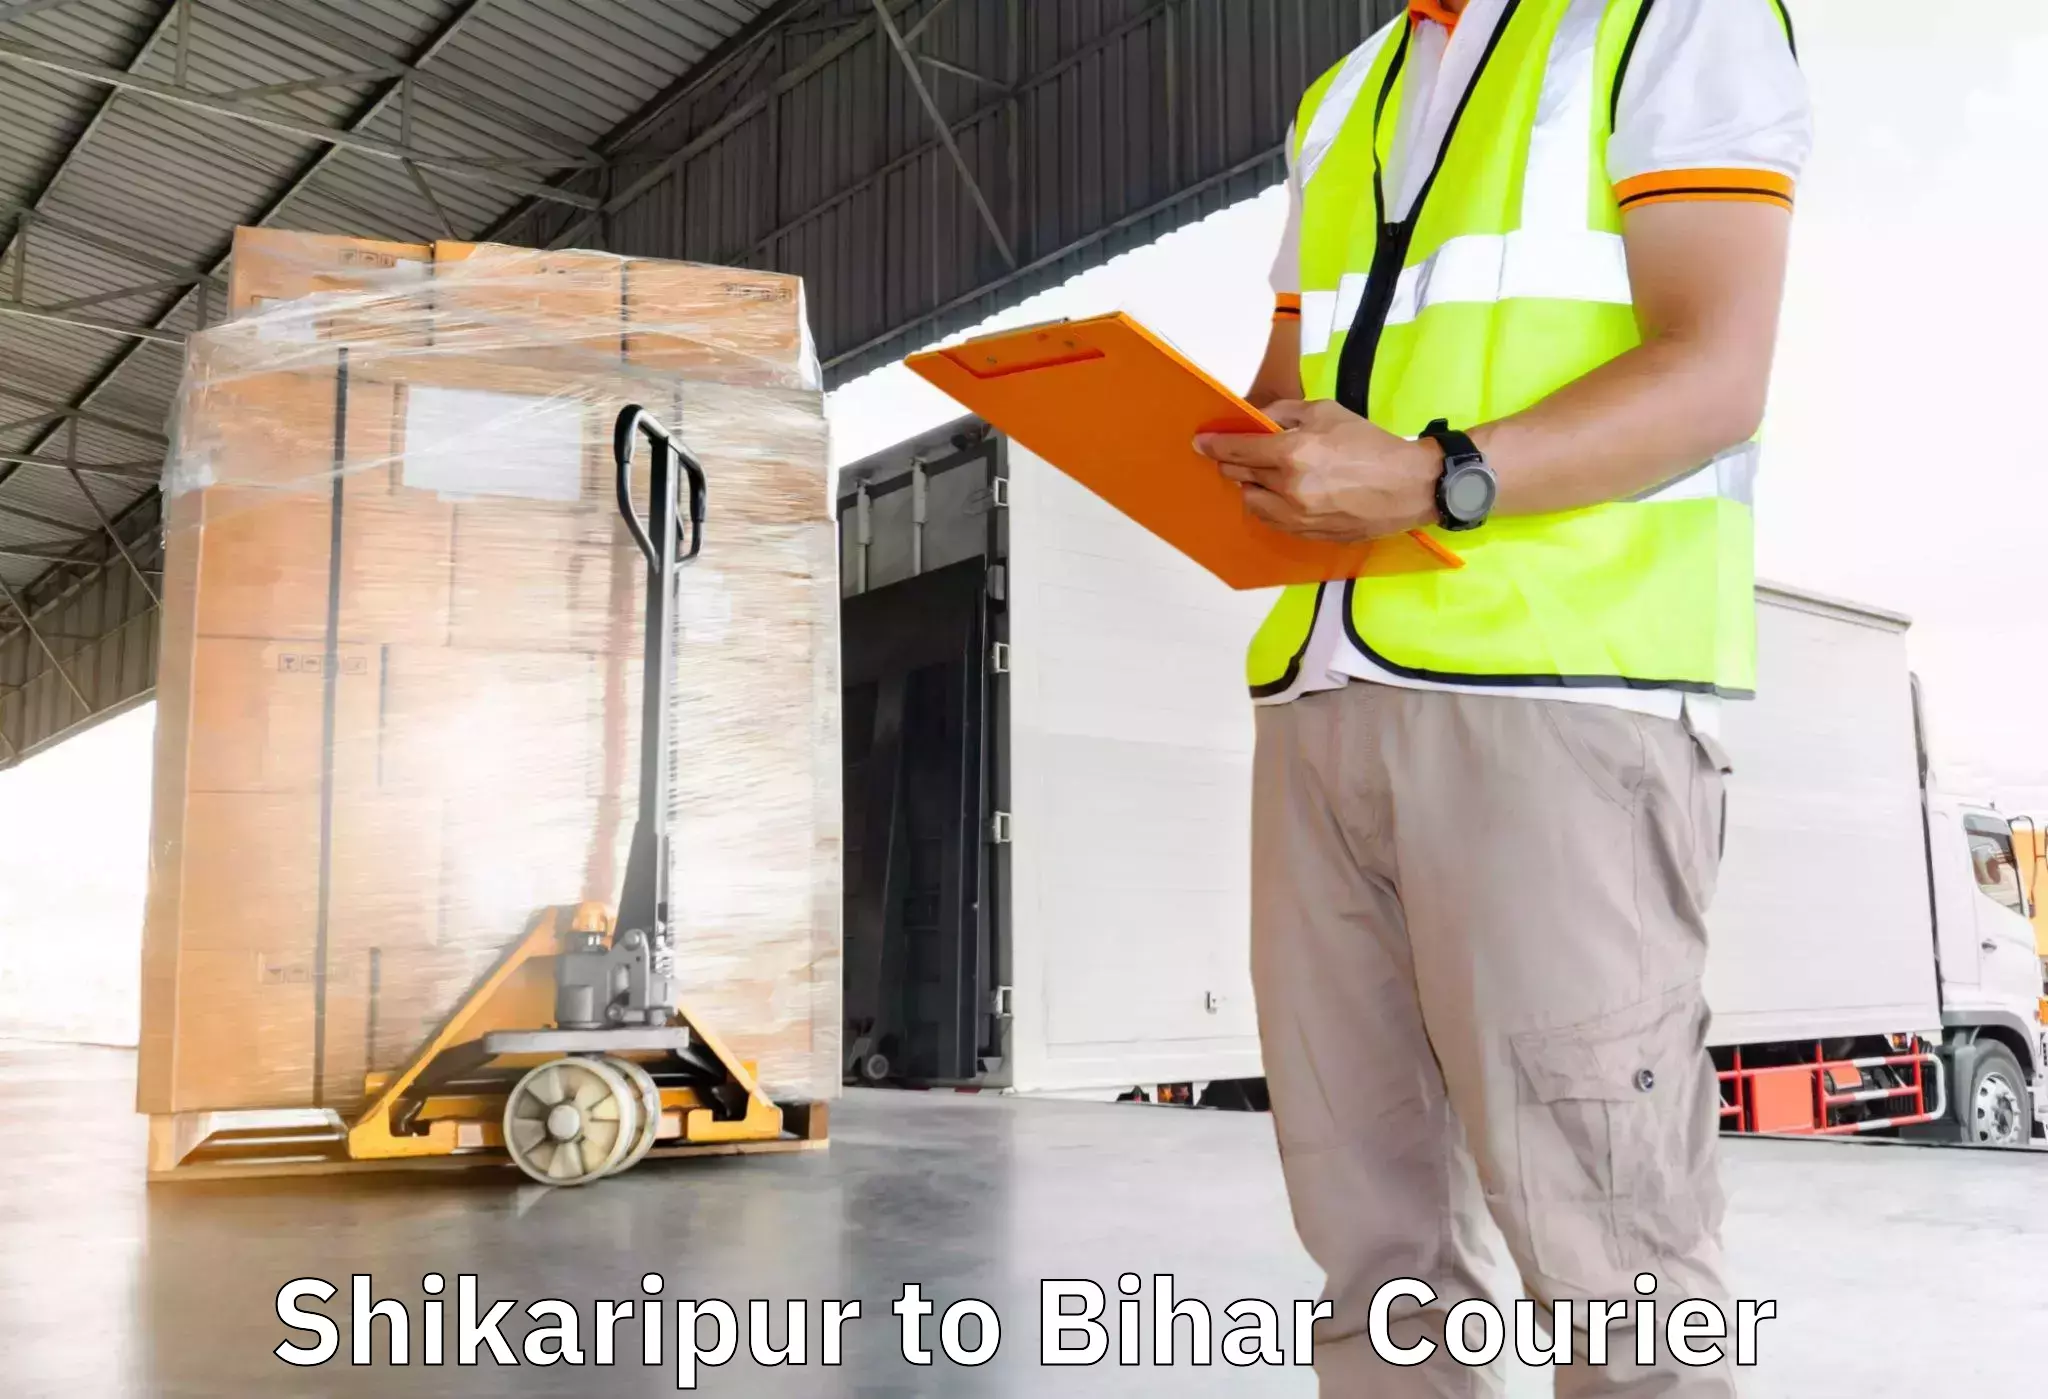 Budget-friendly movers Shikaripur to Bhojpur